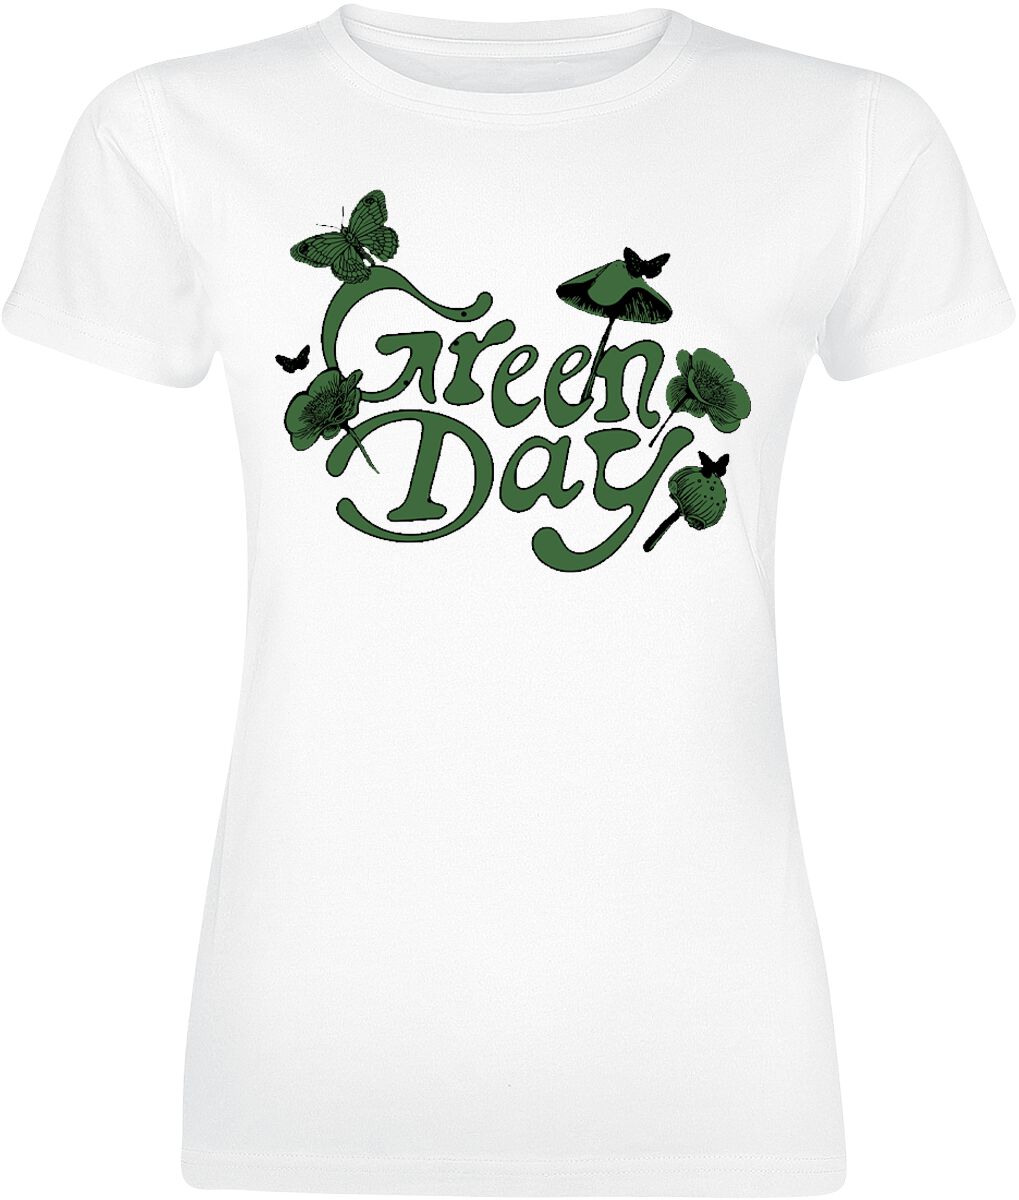 T-Shirt Manches courtes de Green Day - Butterfly - S à XXL - pour Femme - blanc